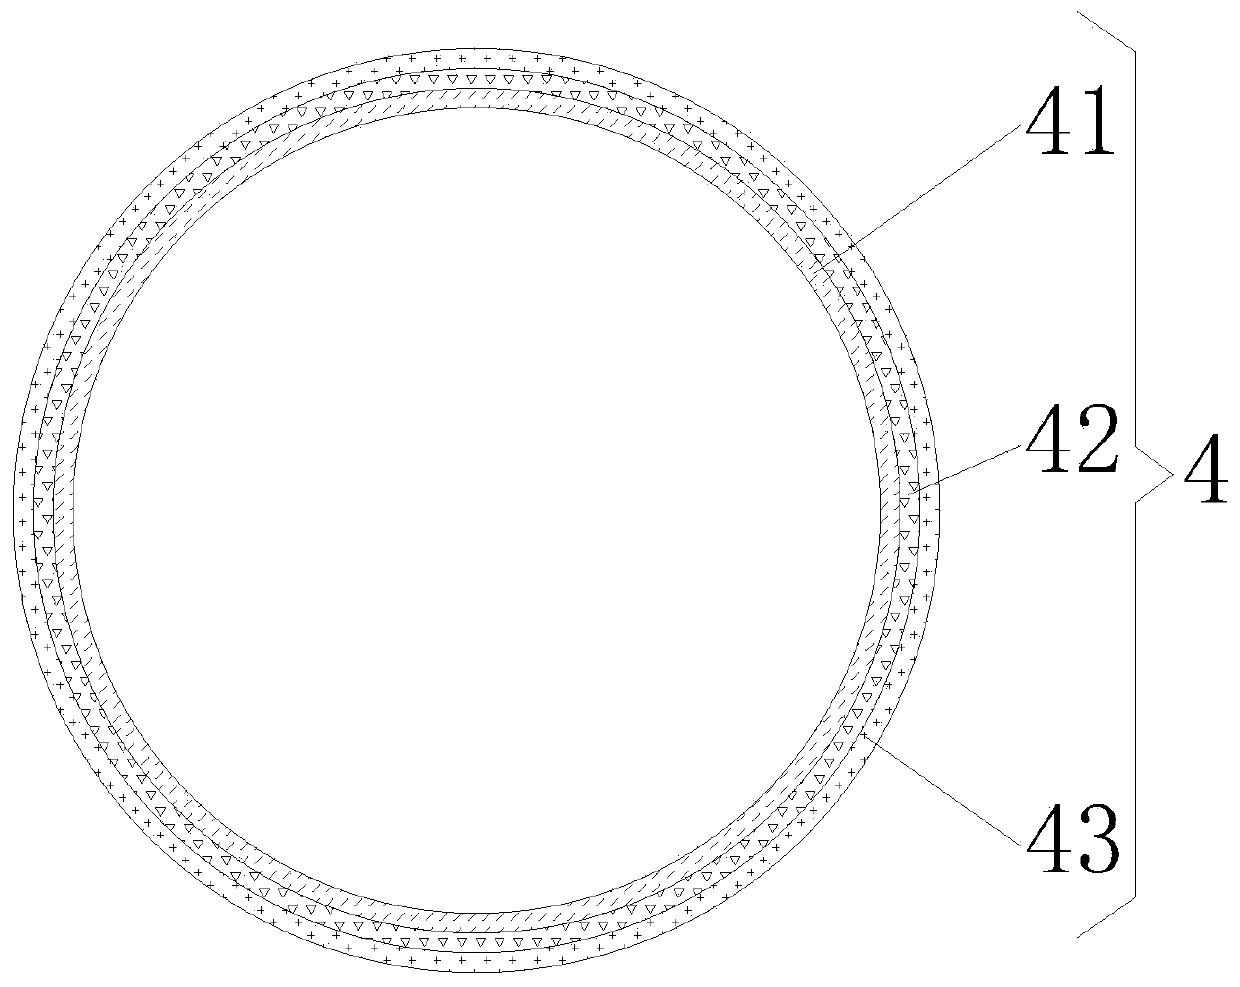 Optical fiber slip ring for optical communication equipment